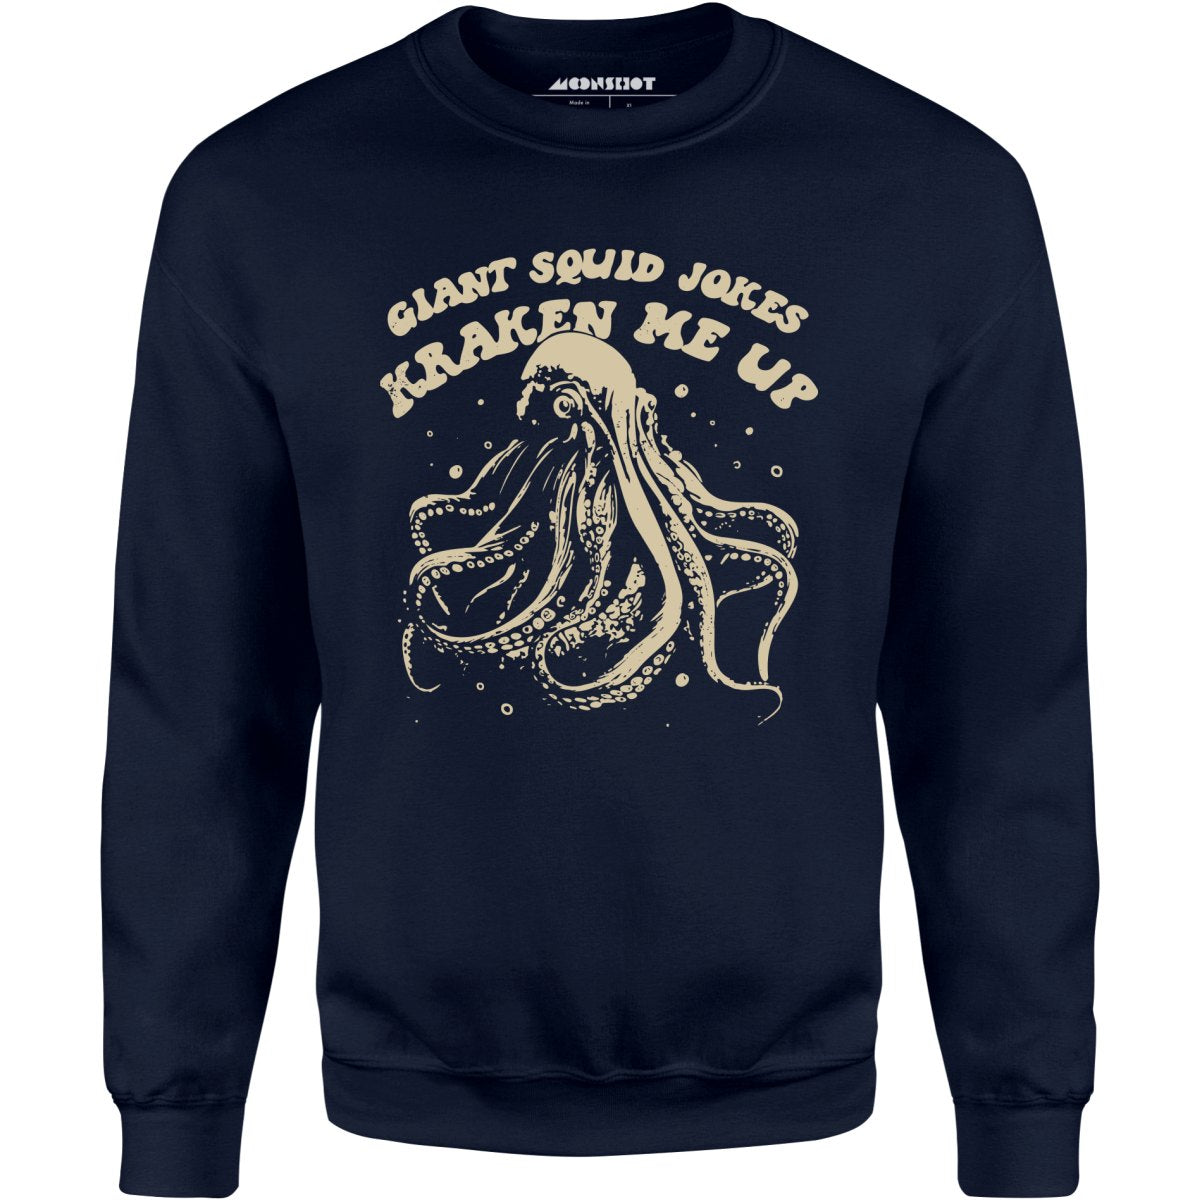 Giant Squid Jokes Kraken Me Up - Unisex Sweatshirt